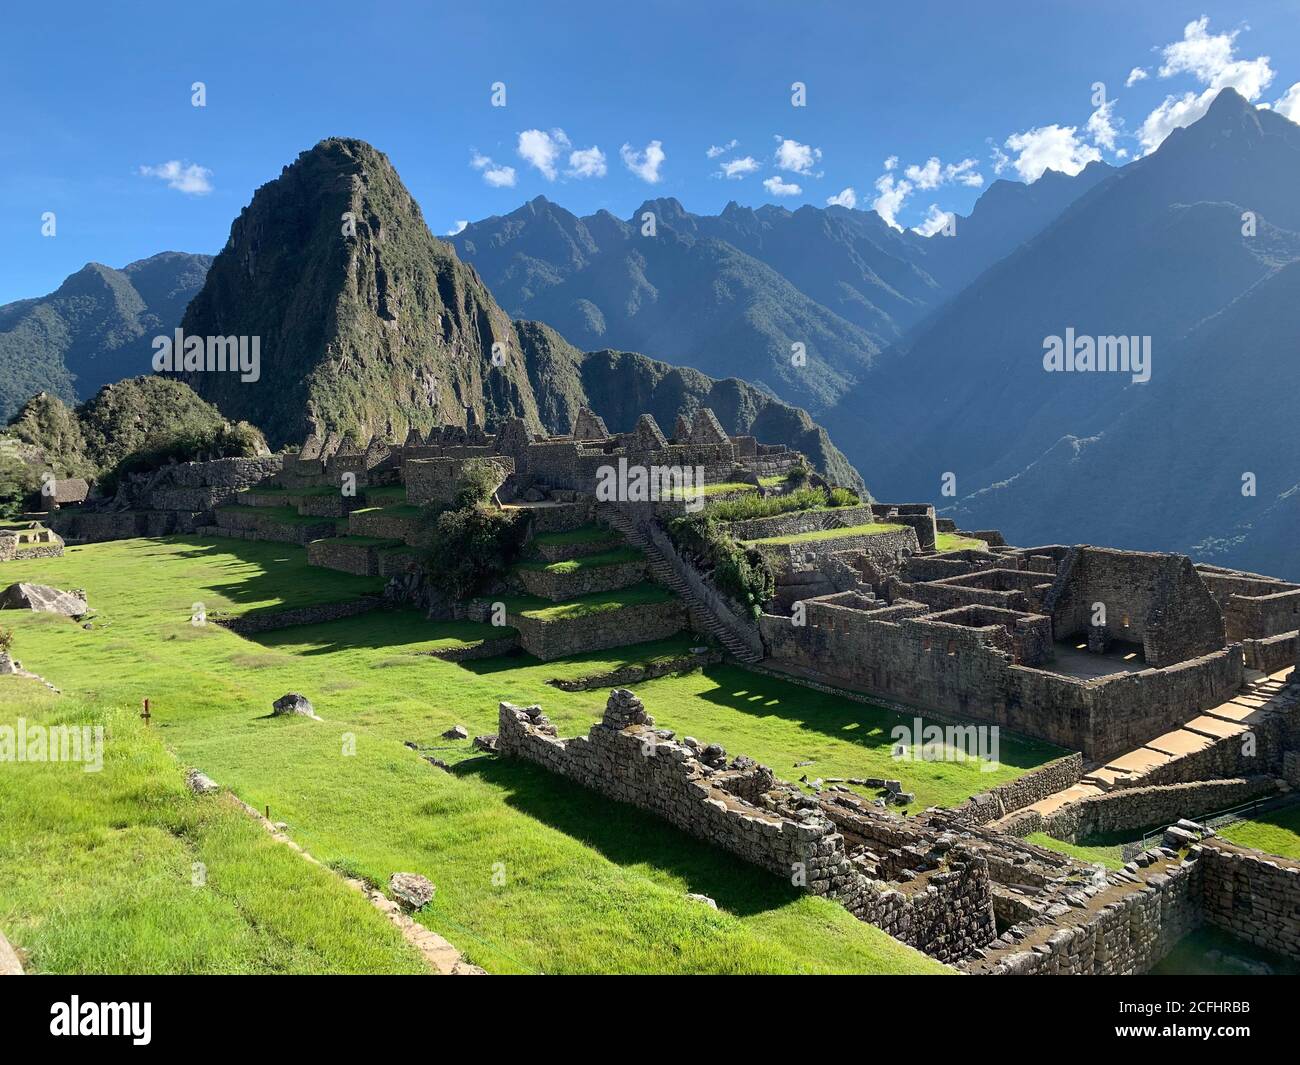 MACHU PICCHU Wohn-und Haushaltsgebäude der alten Inkas Stadt.größte historische inka Attraktion in Peru. Tolle Aussicht auf die alten Inka c Stockfoto